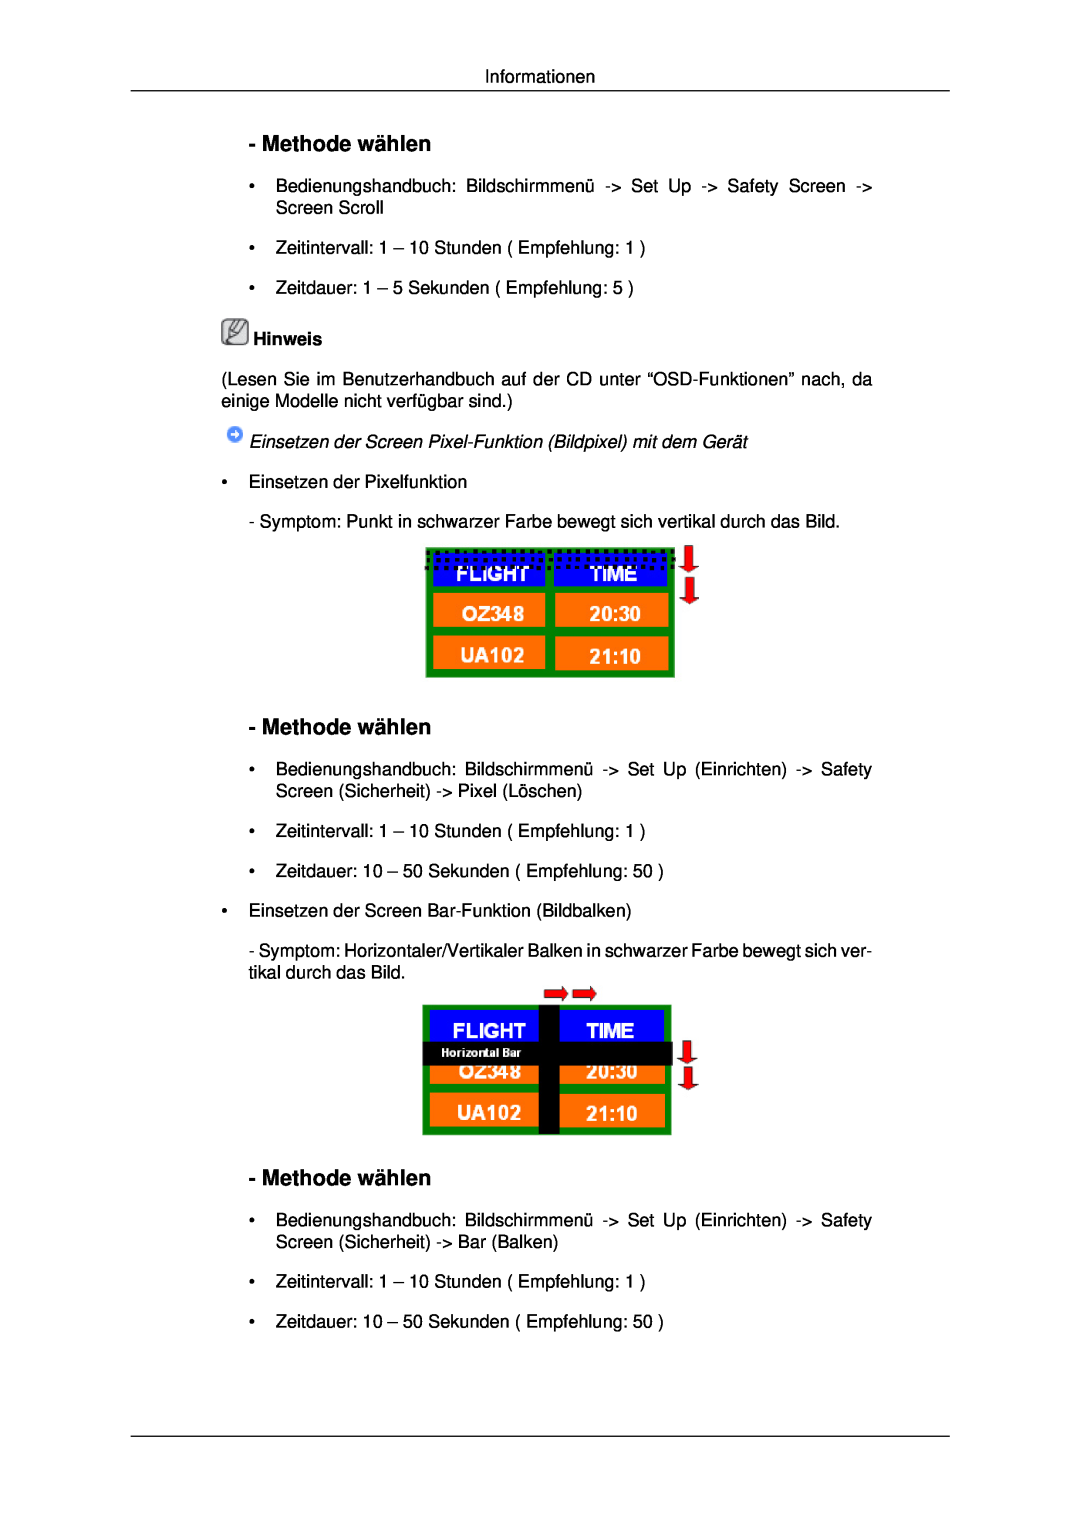 Samsung LH46MSTLBB/EN, LH46MSTABB/EN Methode wählen, Einsetzen der Screen Pixel-Funktion Bildpixel mit dem Gerät, Hinweis 